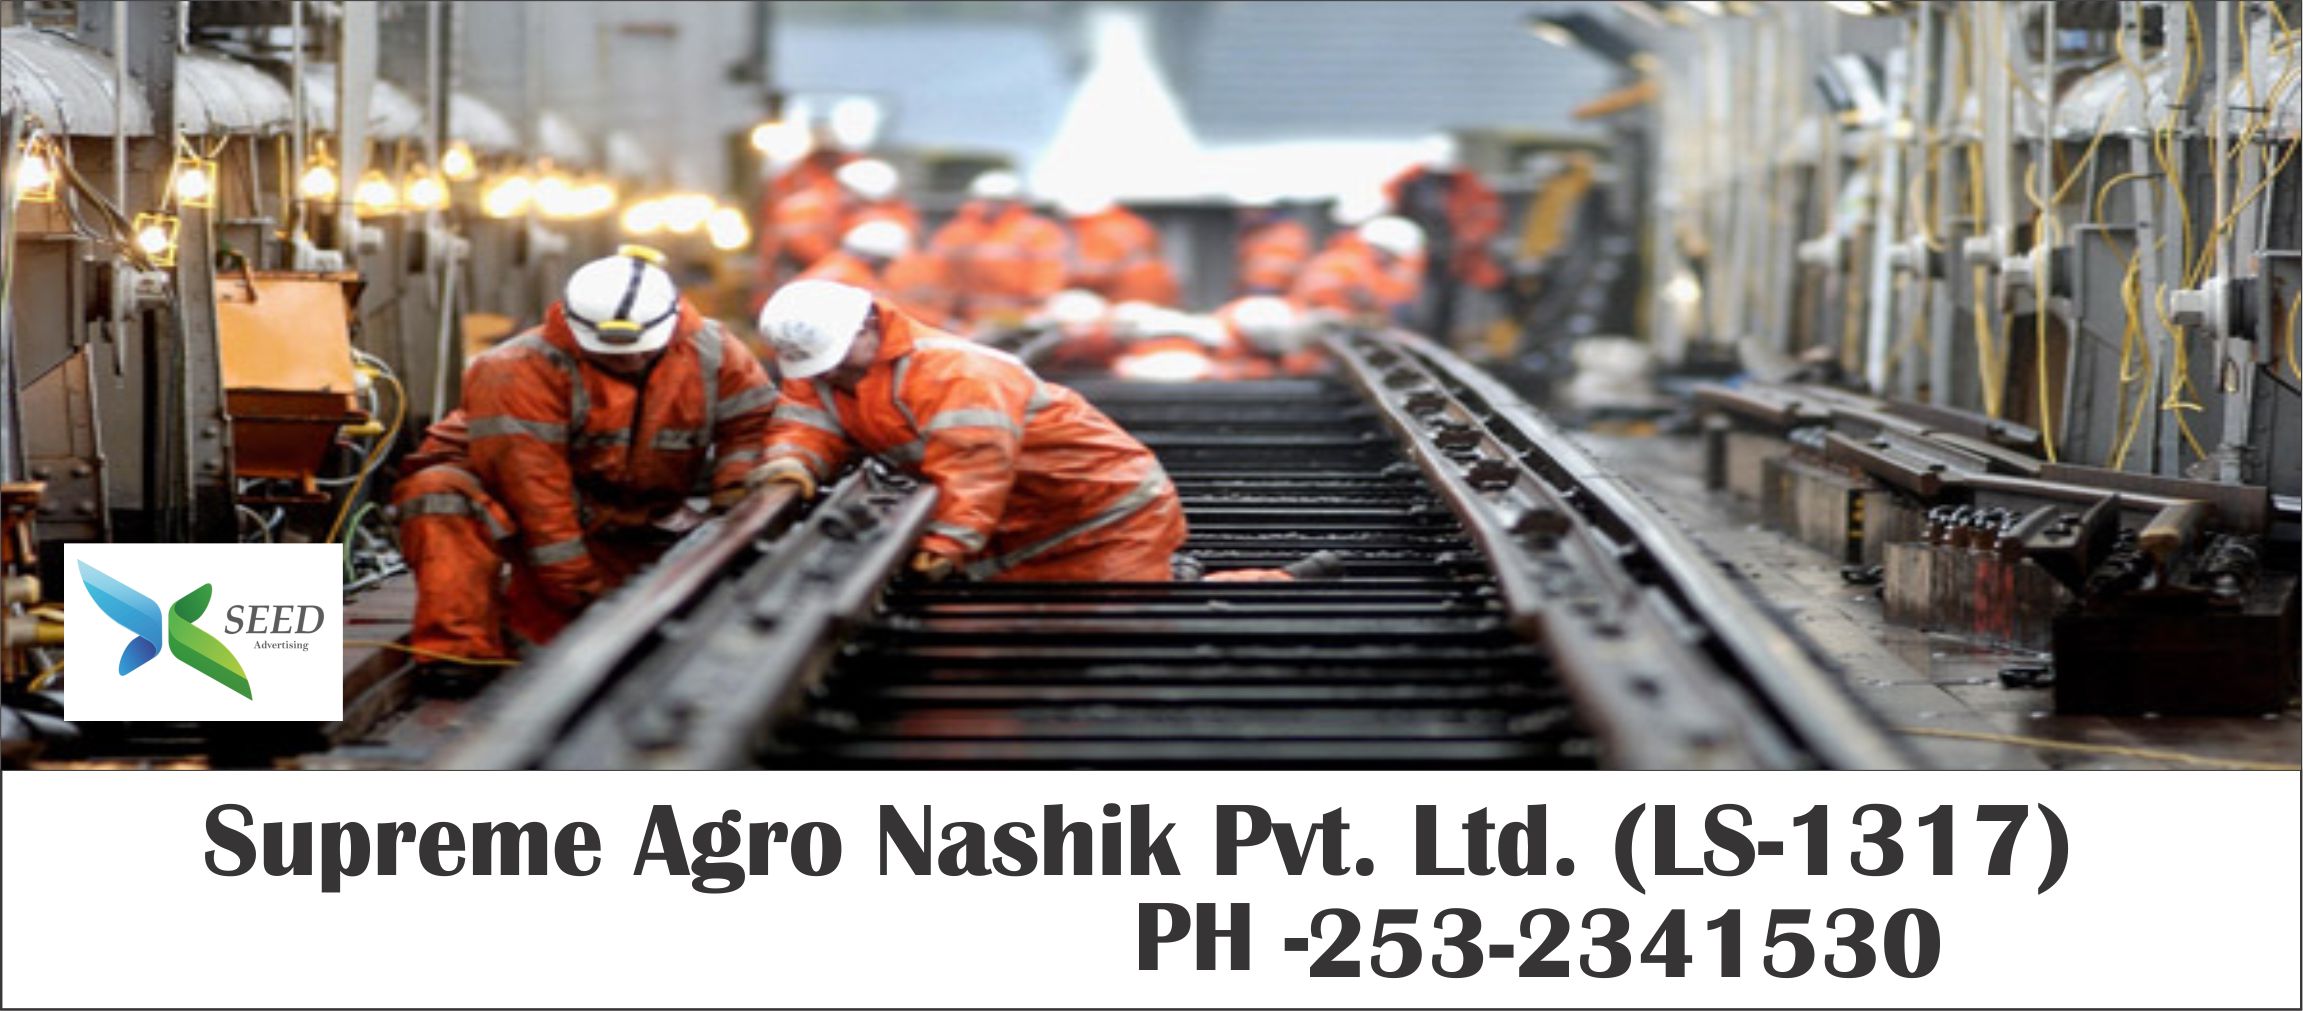 Supreme Agro Nashik Pvt. Ltd.